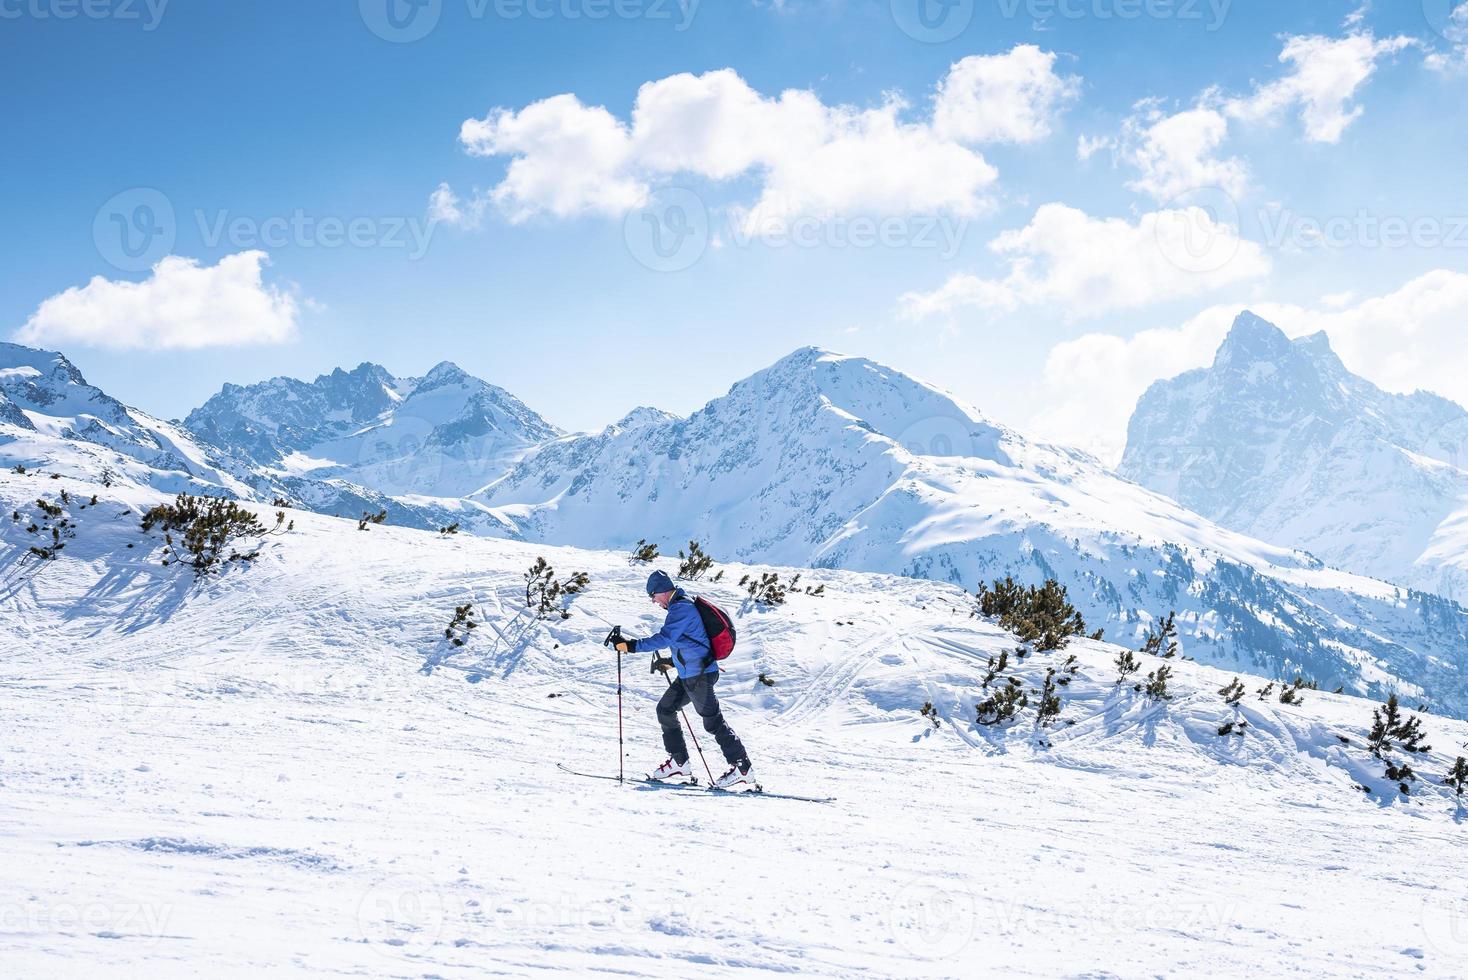 esquiador esquiando en un paisaje nevado contra la cordillera foto